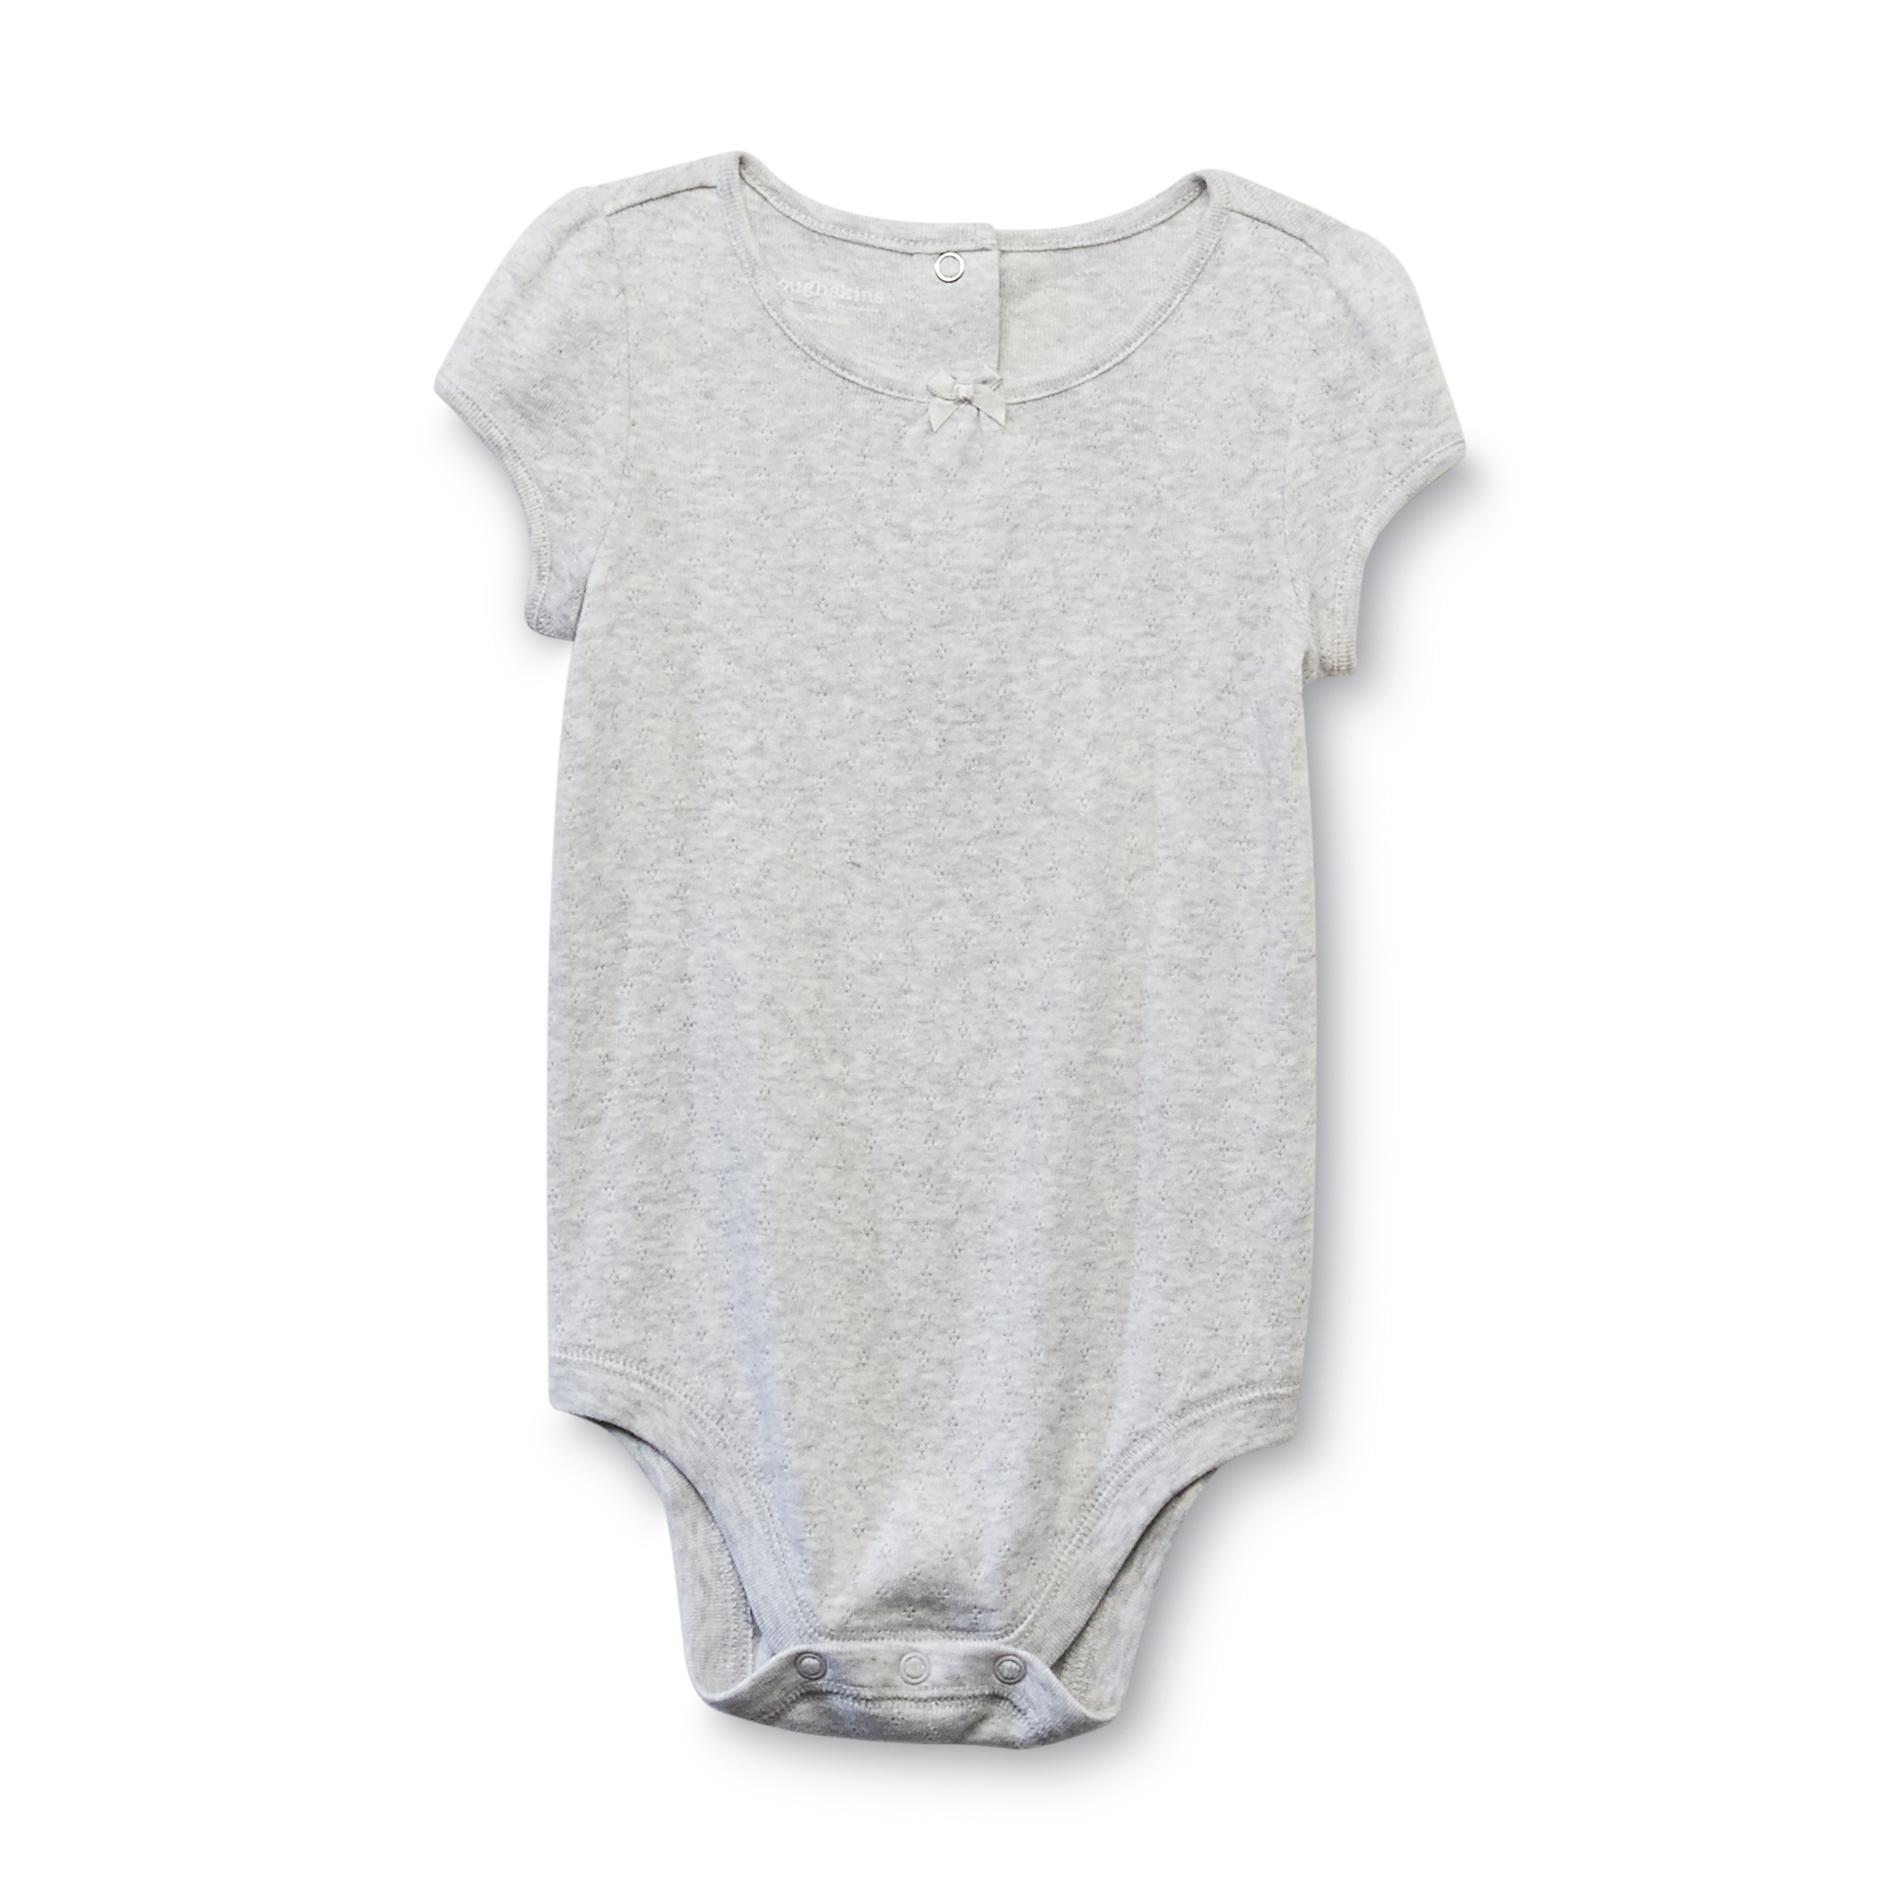 Toughskins Infant Girl's Pointelle Bodysuit